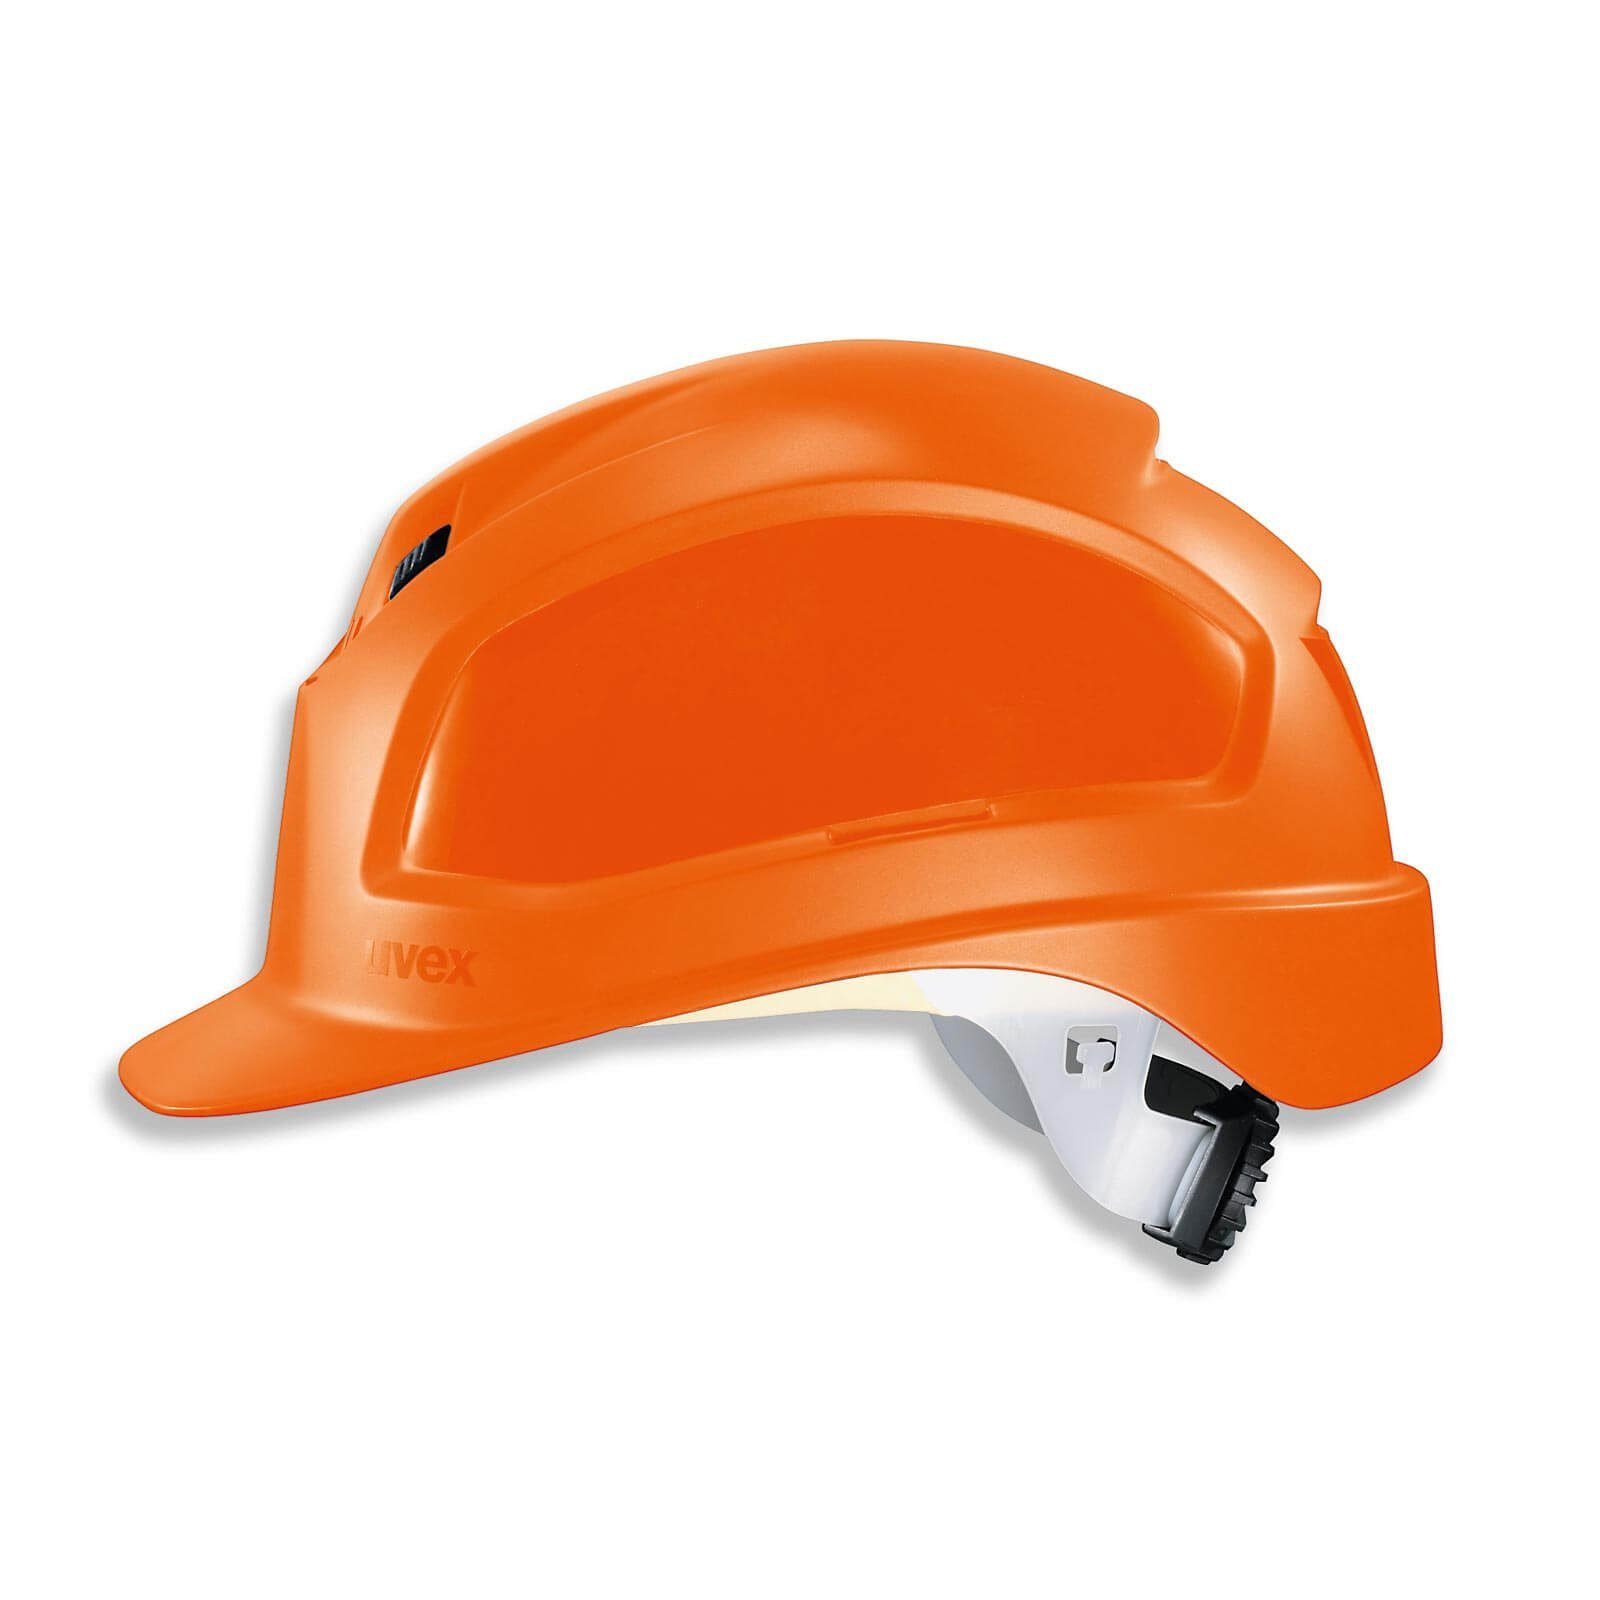 Uvex Schutzhelm pheos B-WR - Arbeitsschutz-Helm, Baustellenhelm, Bauhelm orange